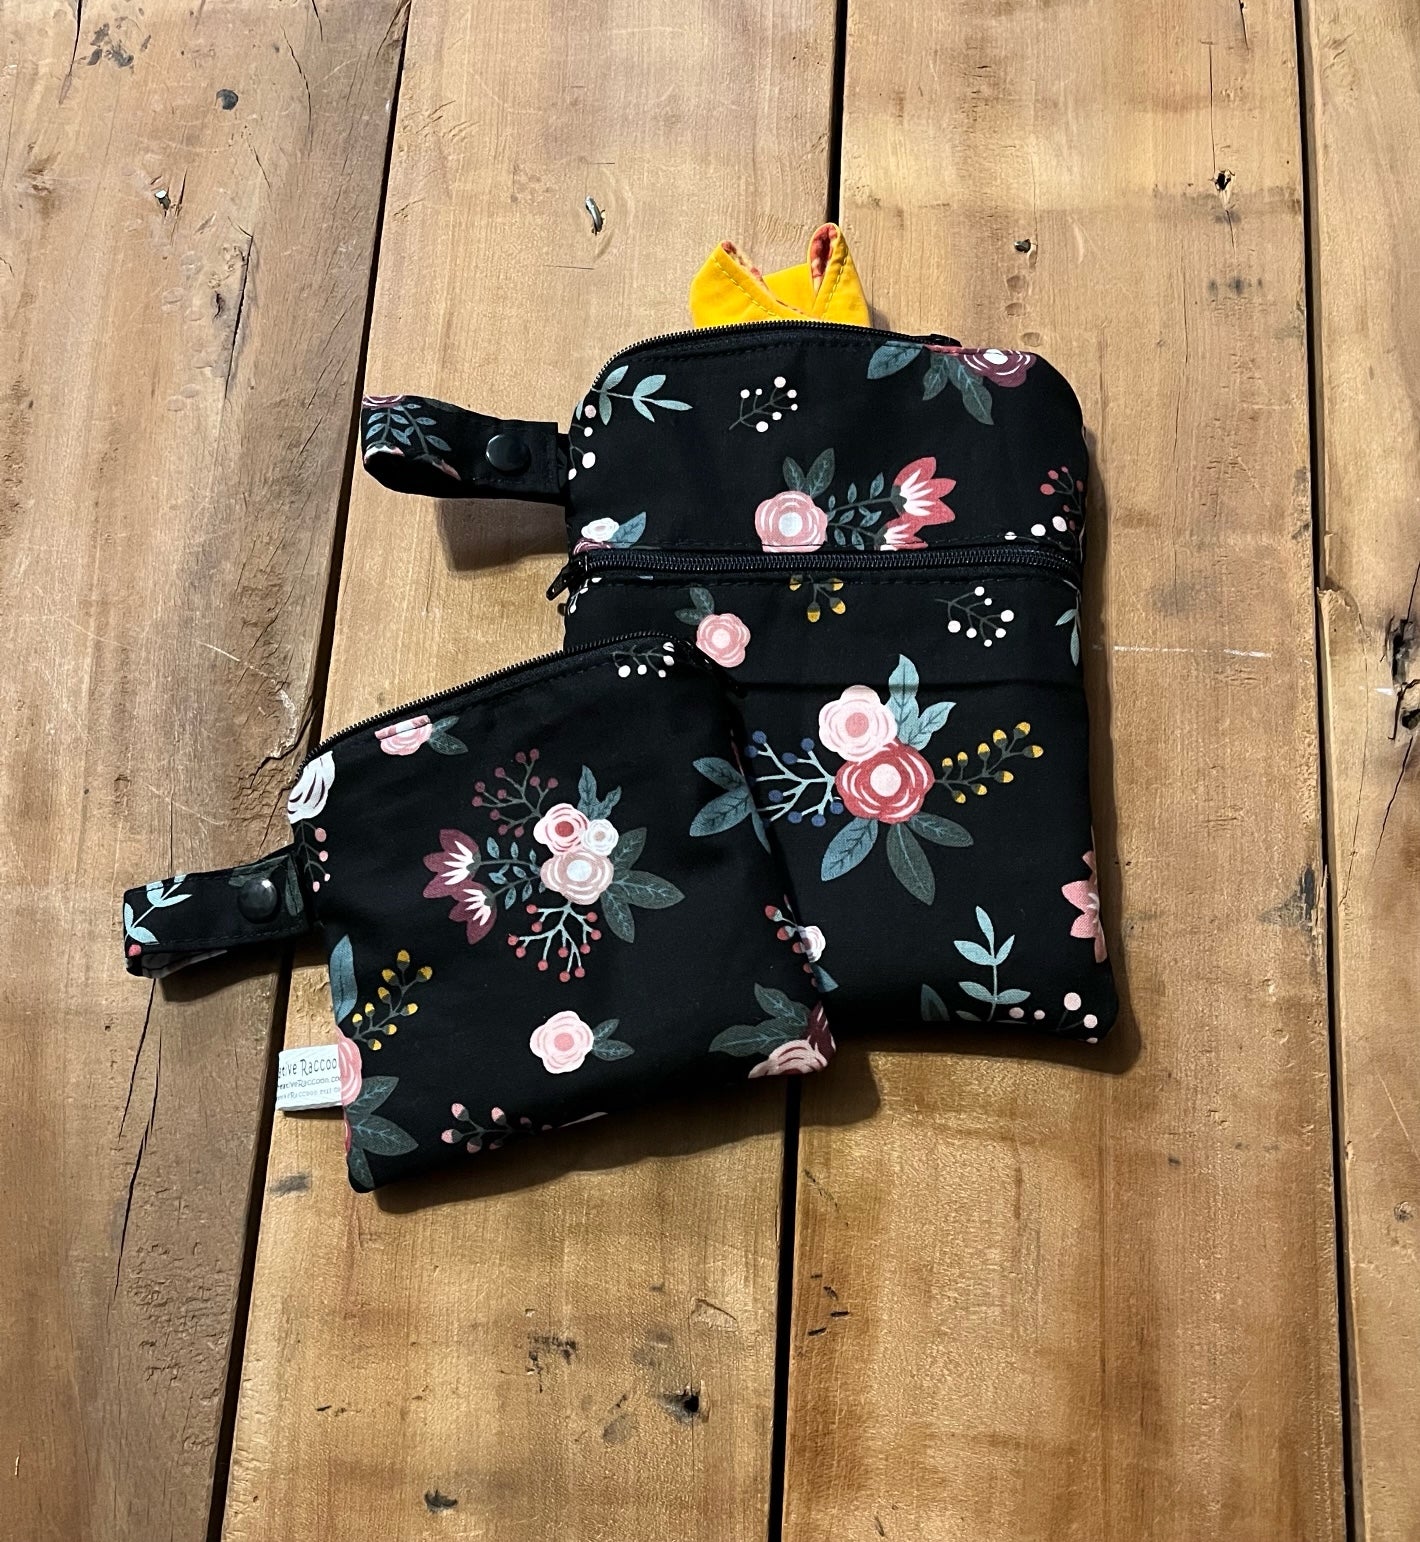 Black Floral wet dry bag - shown in the "big" wet bag & mini wet bag